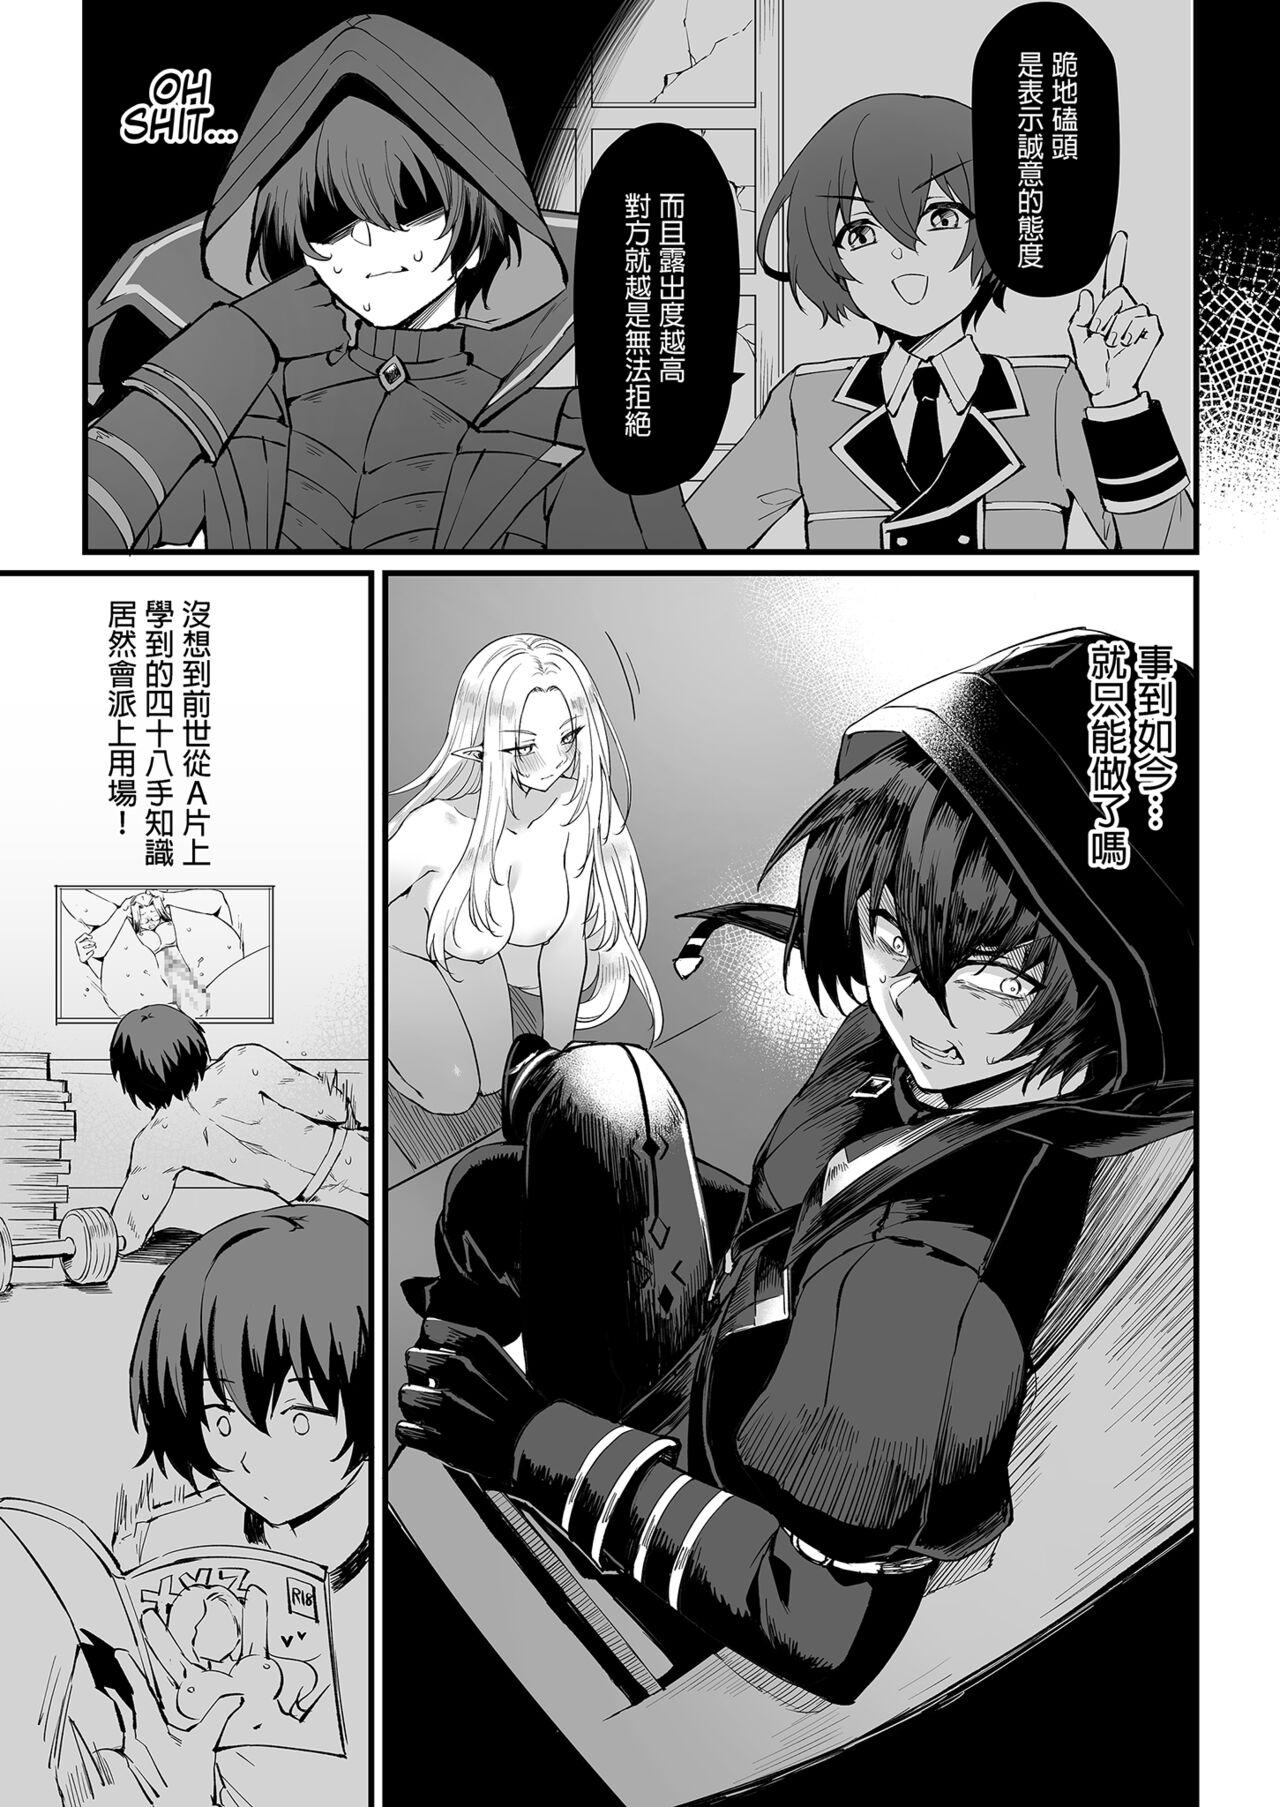 Moaning I NEED MORE POWER! - Kage no jitsuryokusha ni naritakute | the eminence in shadow Small Tits - Page 7